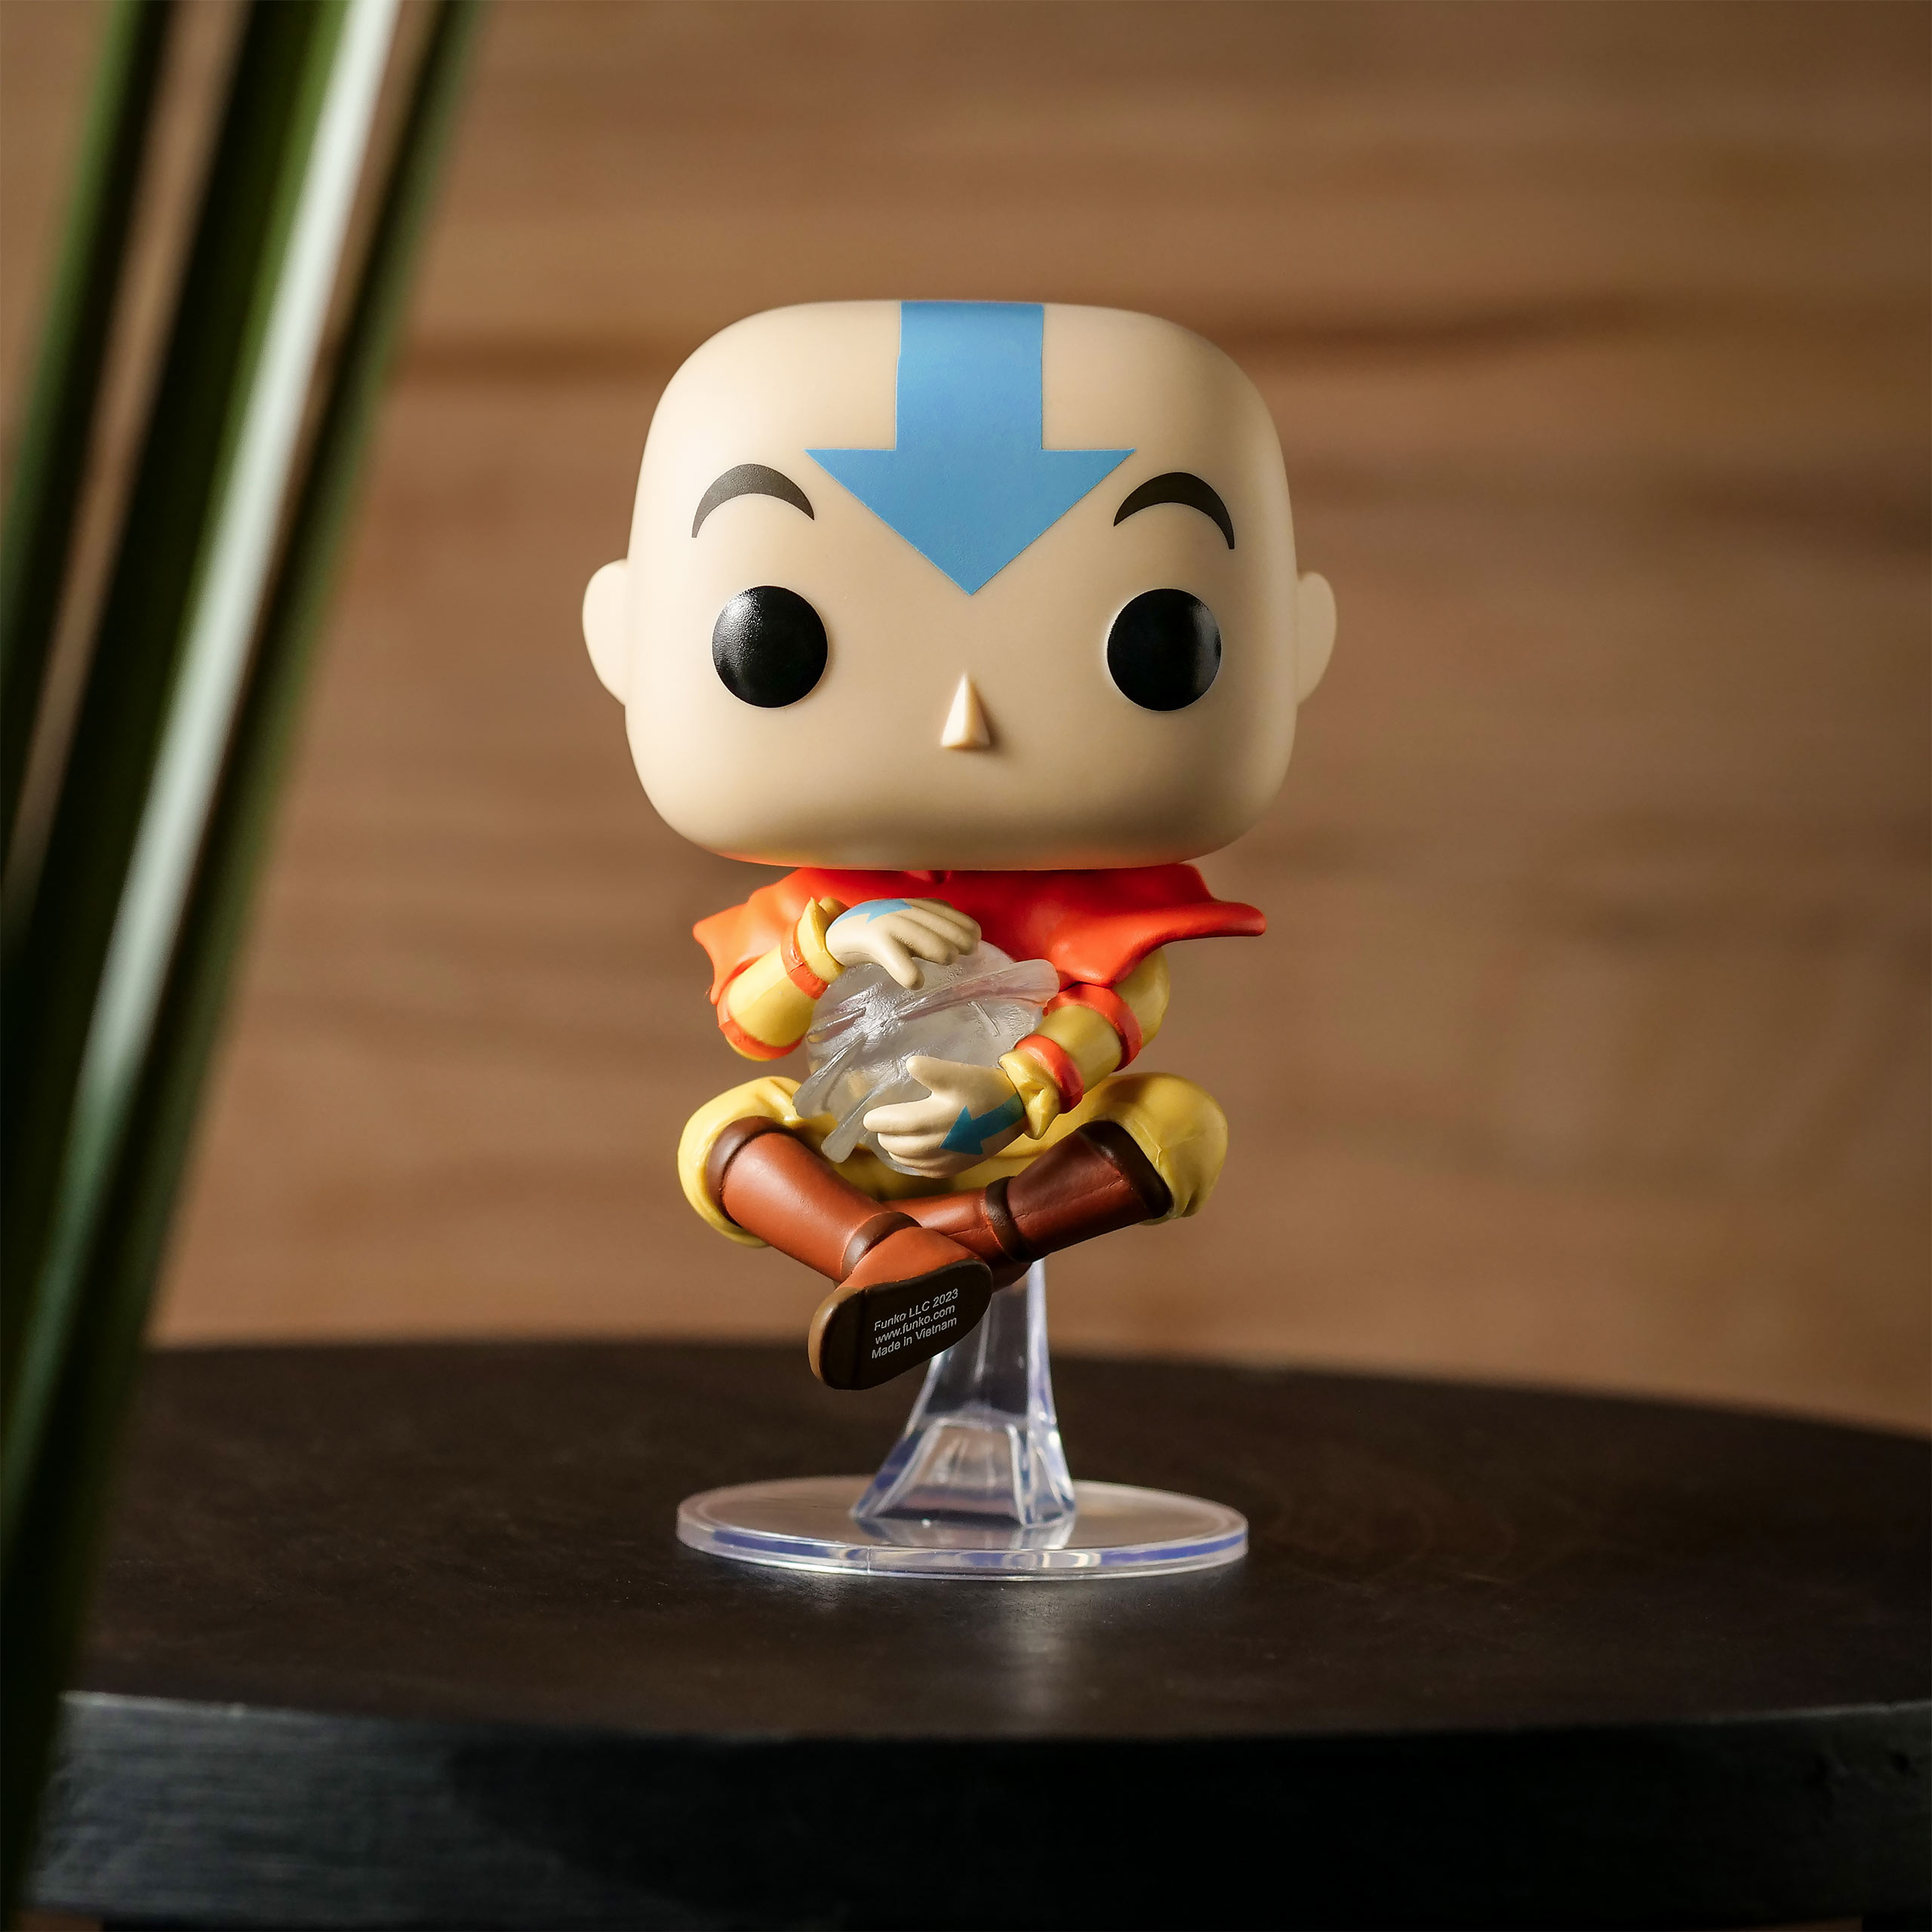 Avatar The Last Airbender - Aang Floating Funko Pop Figurine